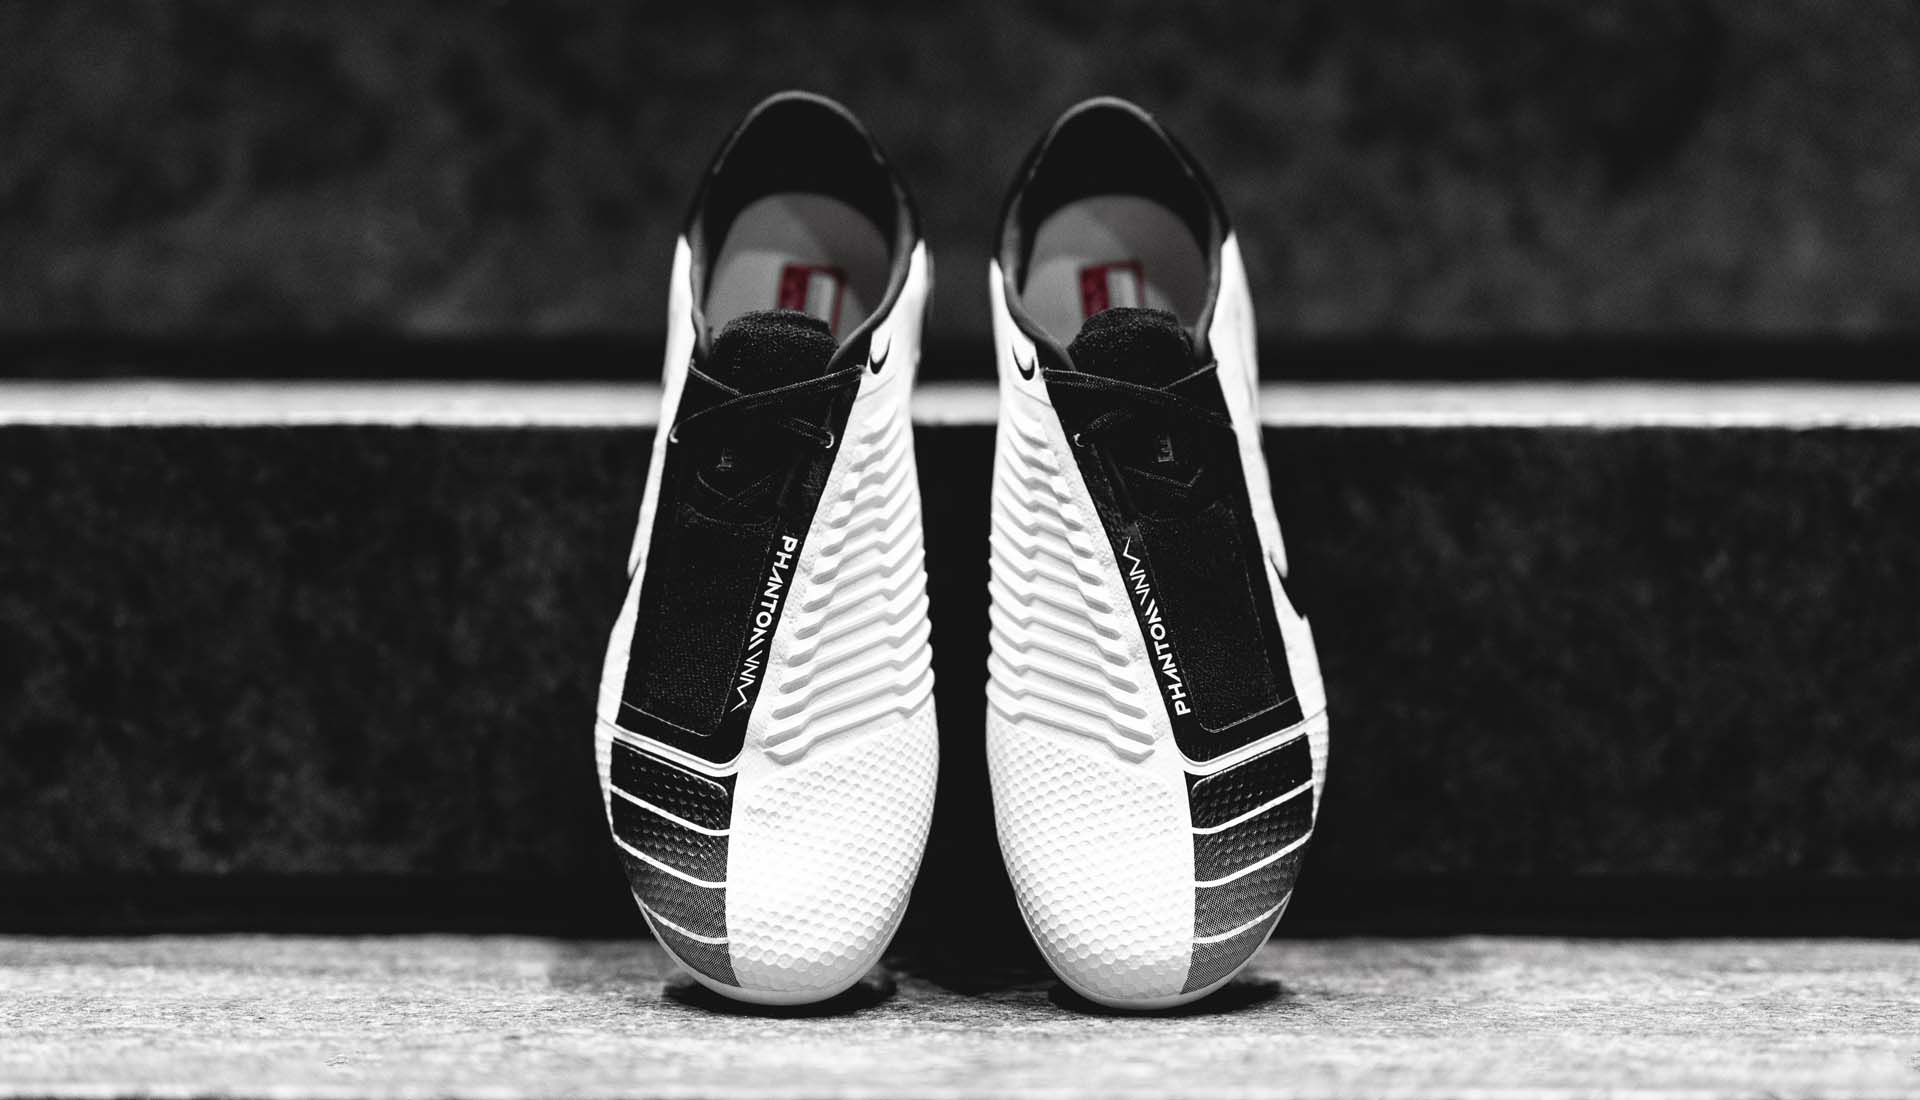 Giày bóng đá Nike Phantom VNM trong bộ sưu tập Future DNA với gam màu đen trắng đẹp mắt